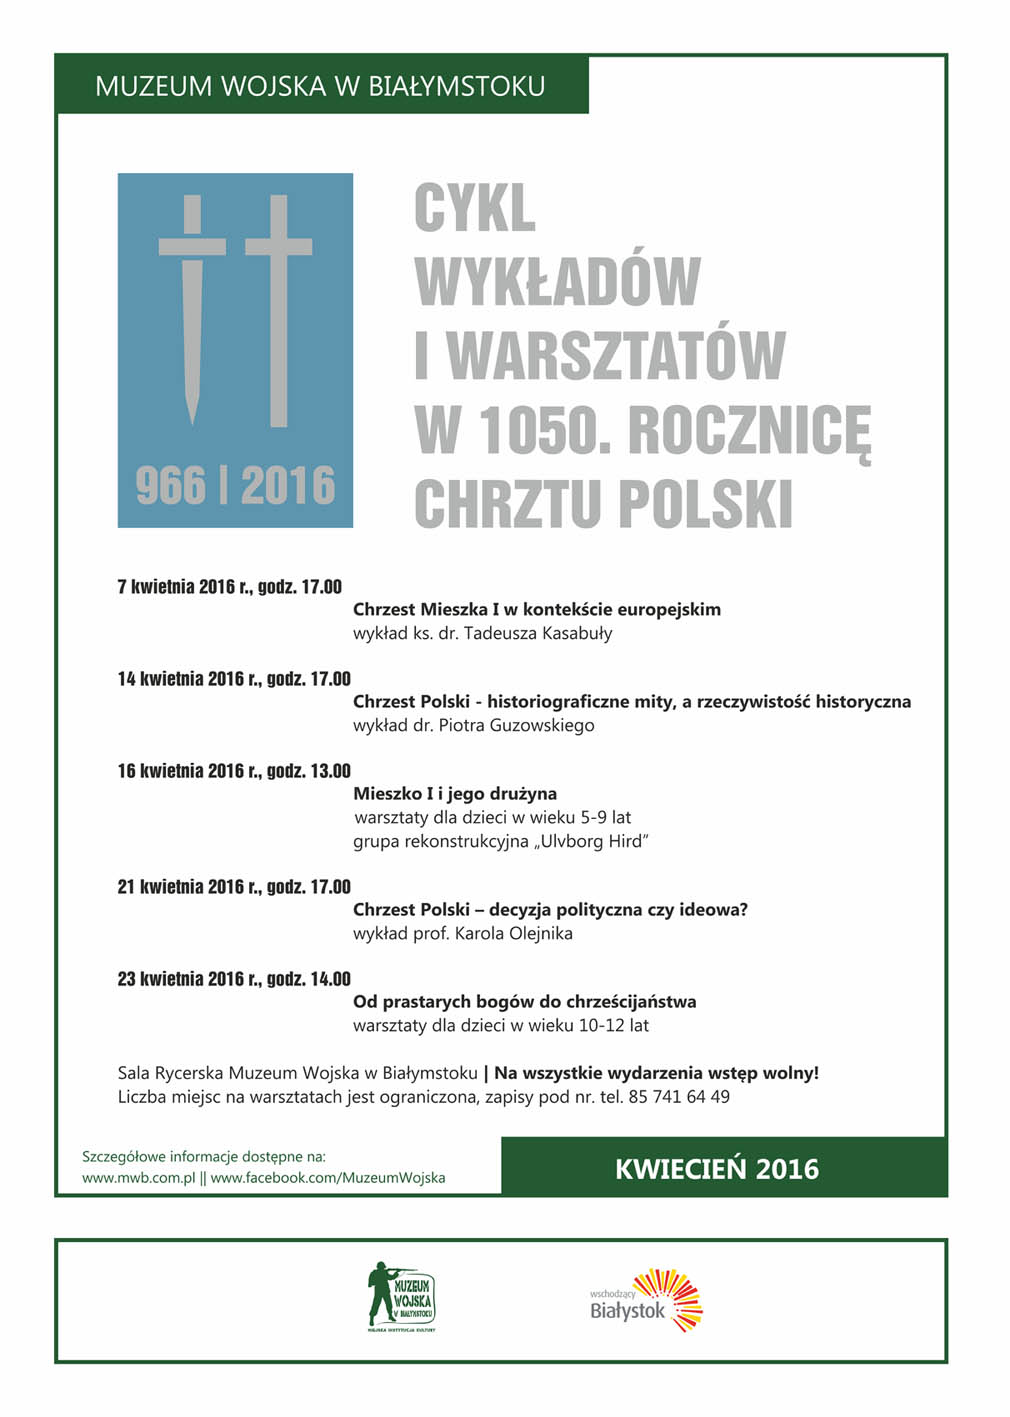 Harmonogram wykładów i warsztatów w 1050. rocznicę Chrztu Polski